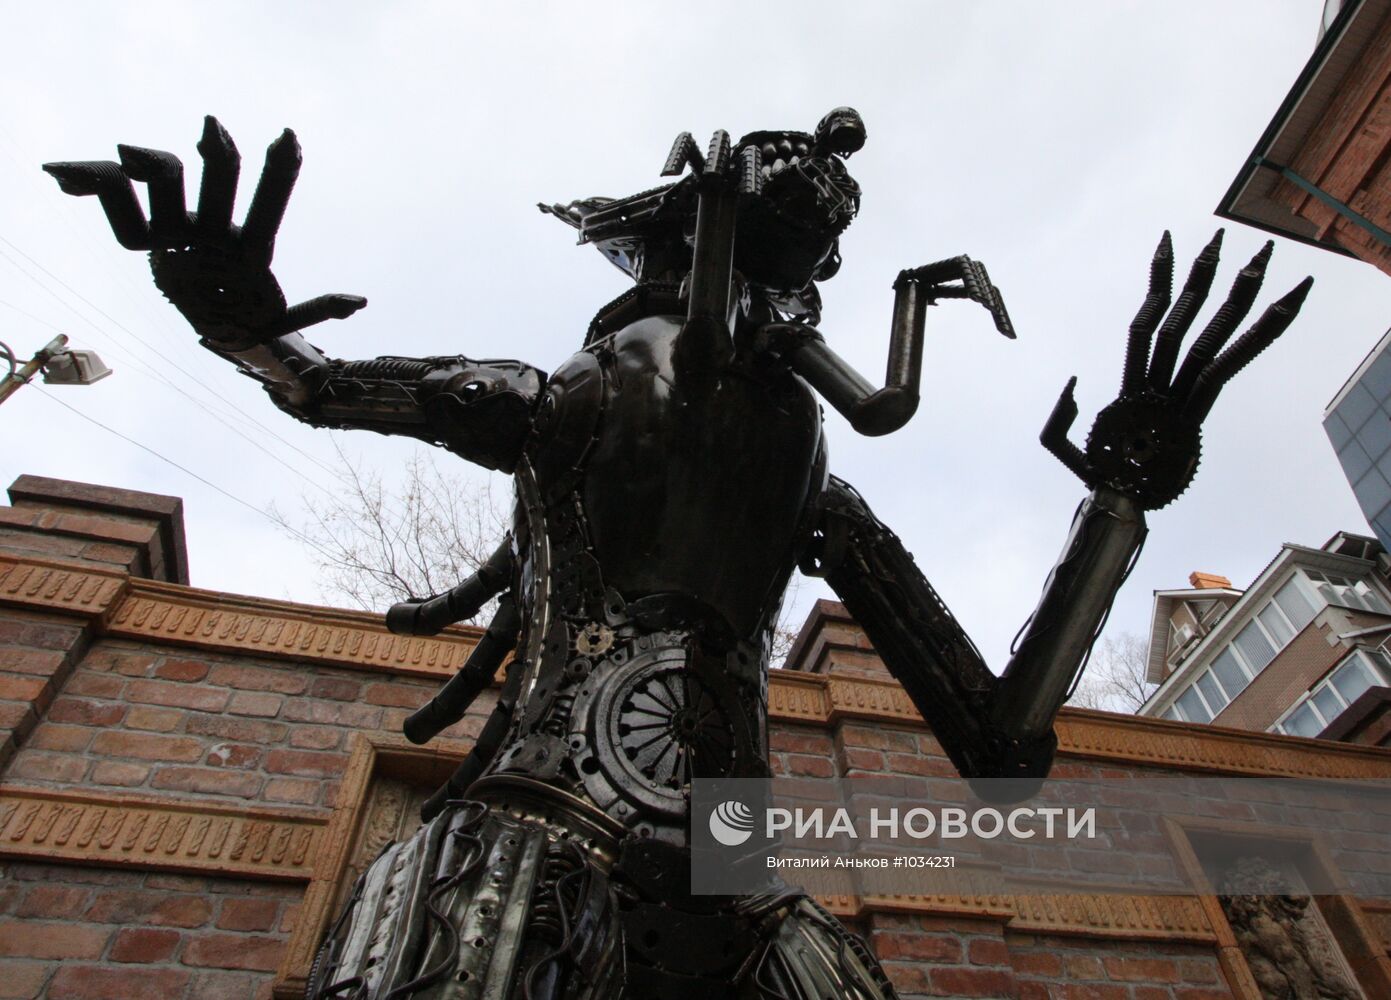 Статуя "Чужого" установлена в центре Владивостока